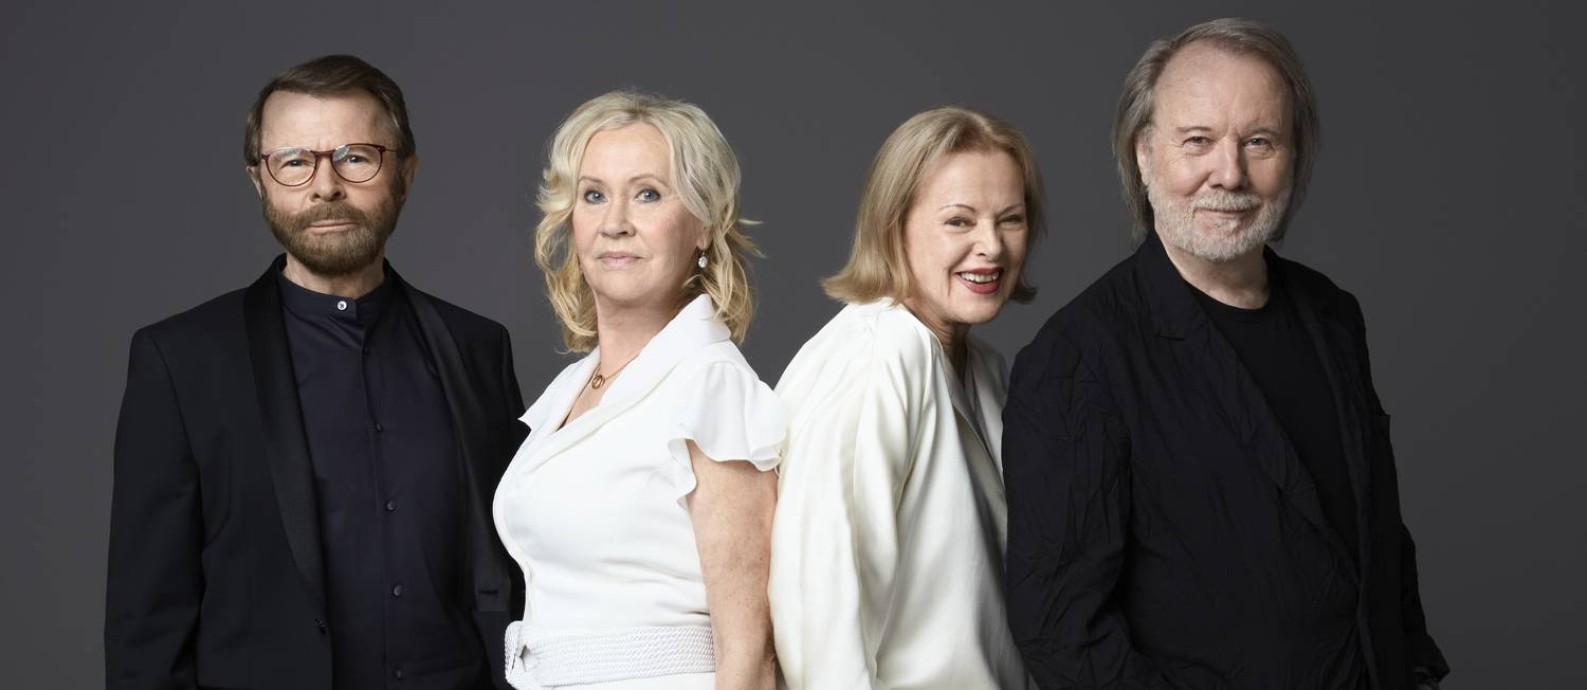 O grupo sueco Abba, em 2021 Foto: Baillie Walsh / Divulgação